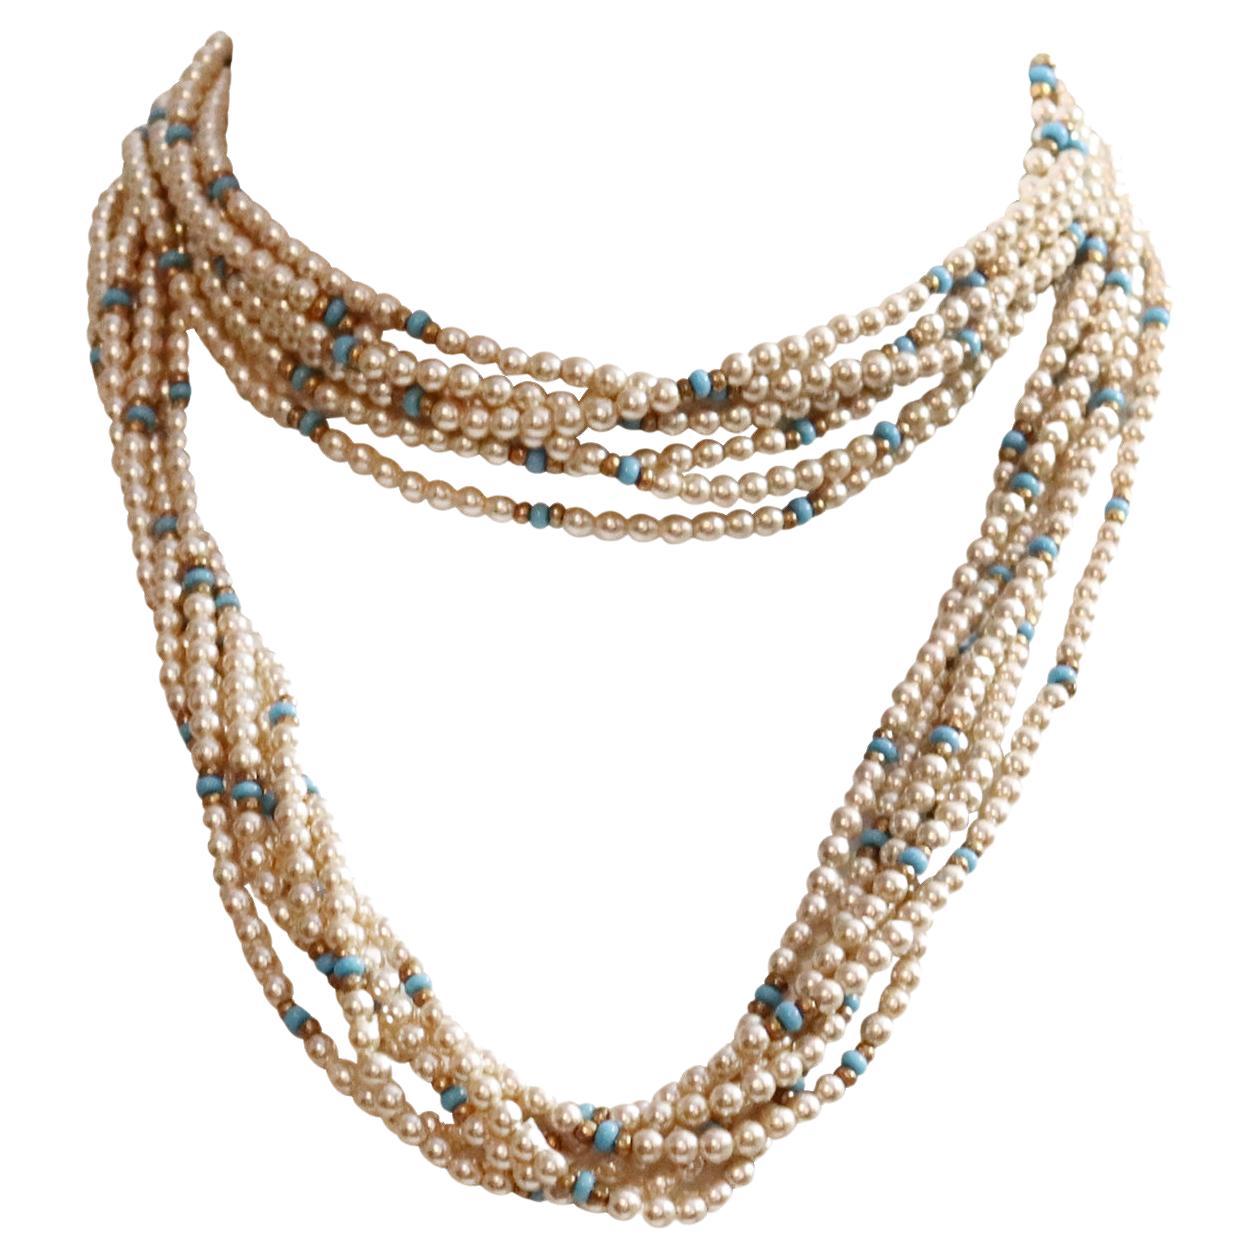 Halskette aus Kunstperlen und Türkis mit Goldperlen mit Perlen, ca. 1990er Jahre